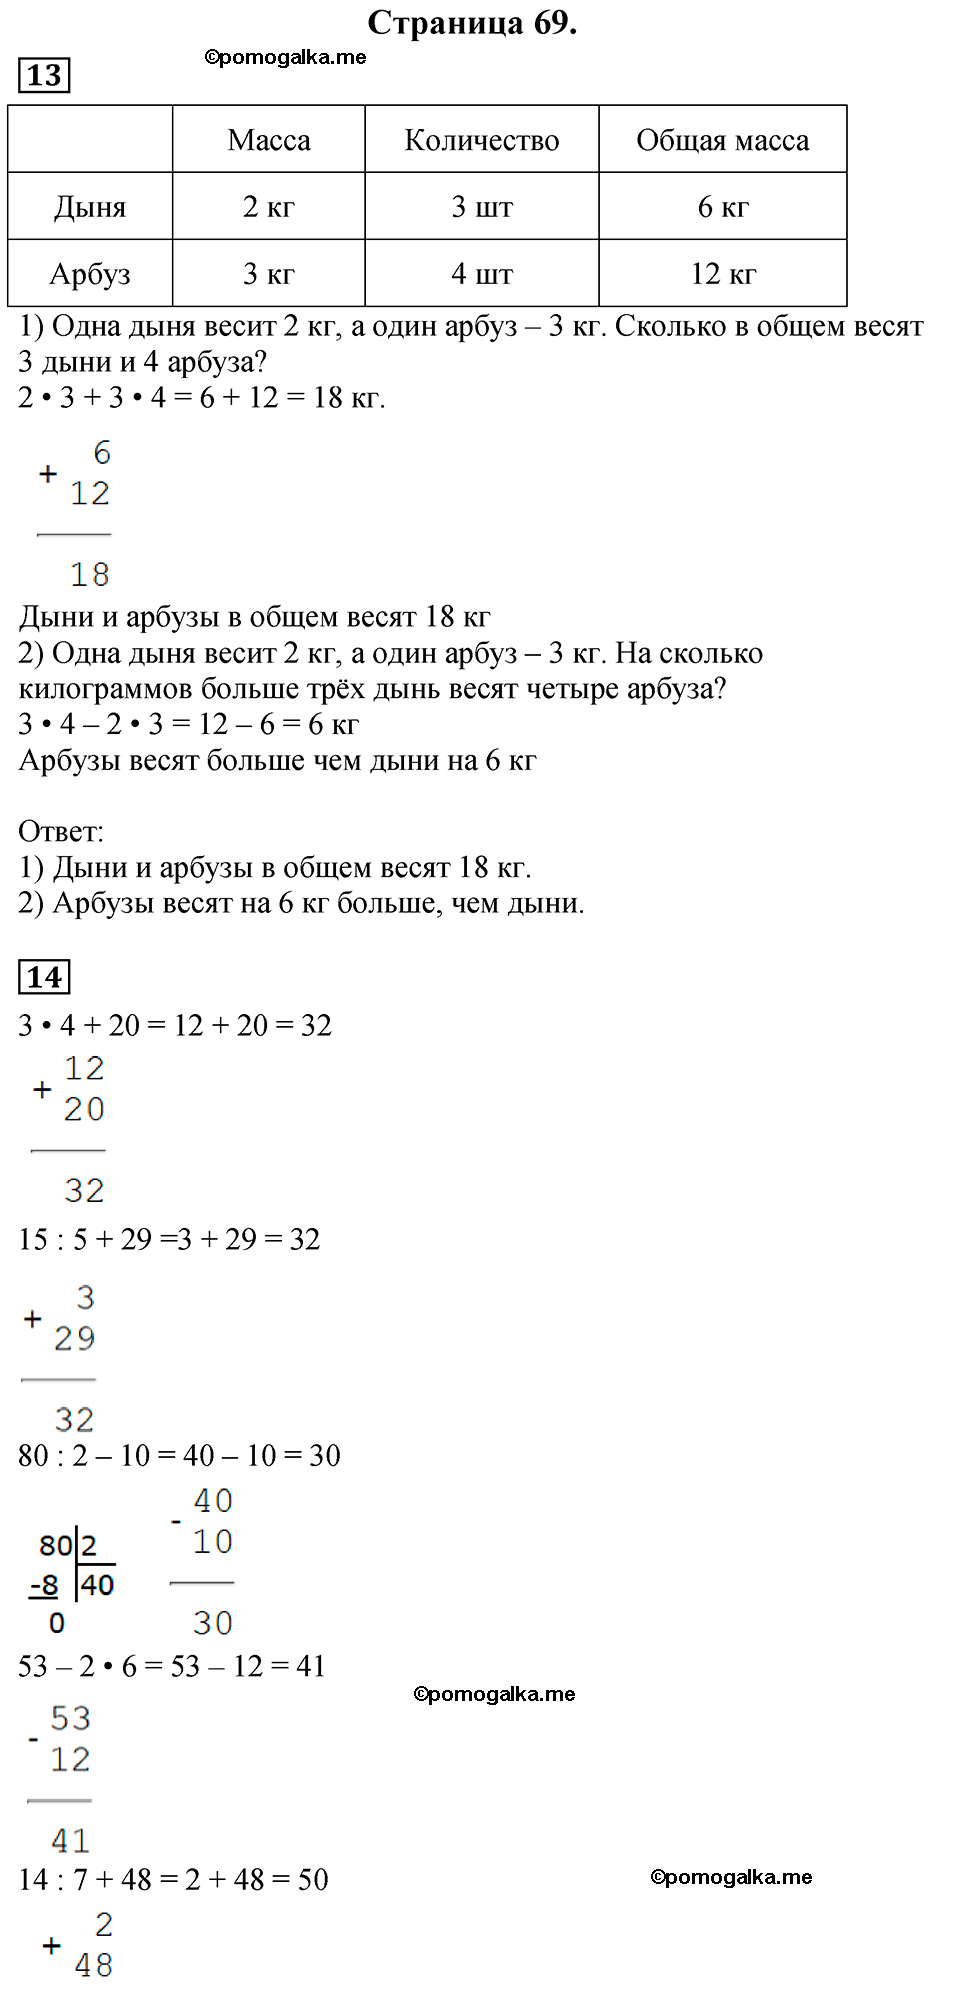 Страница №69 Часть 1 математика 3 класс Дорофеев